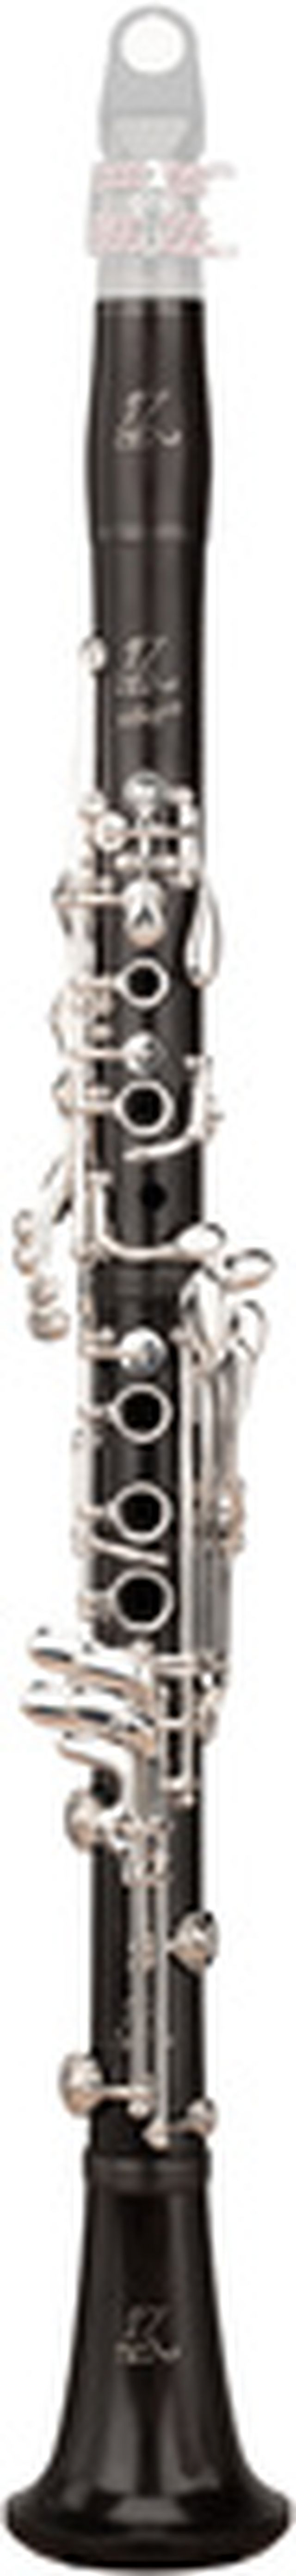 RZ Clarinets Allegro Bb-Clarinet 18/6